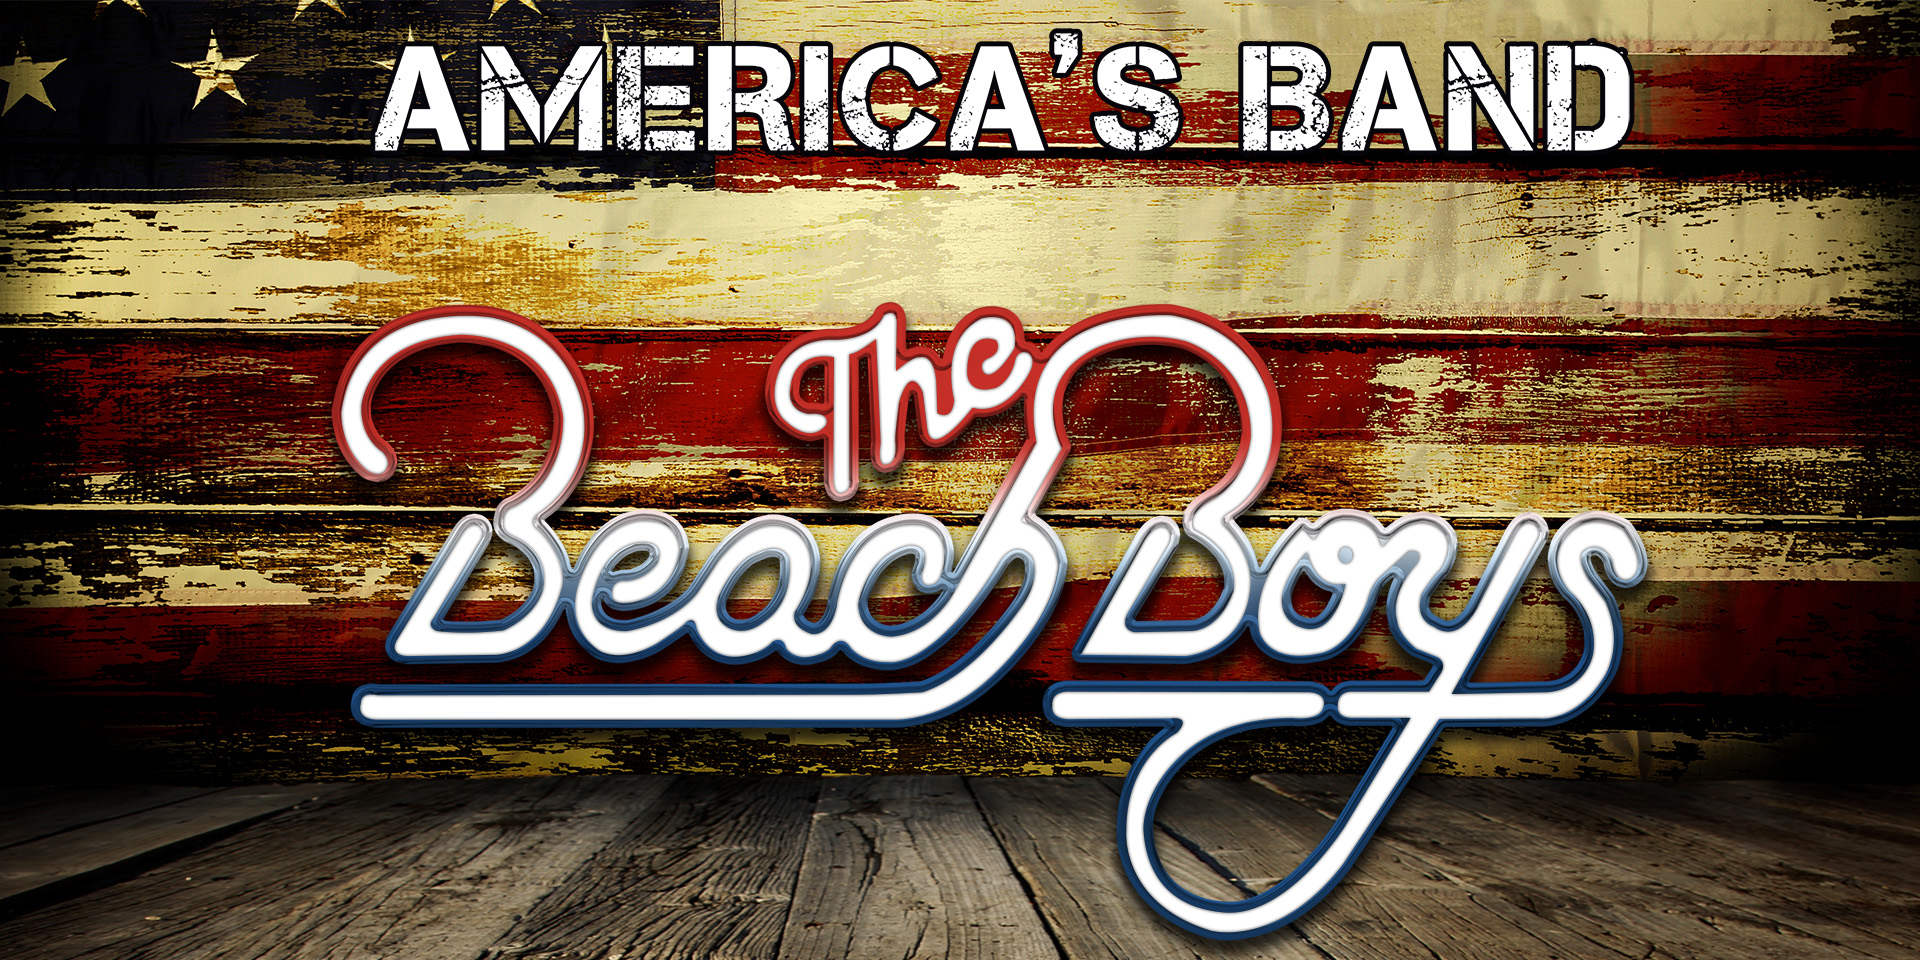 Beach Boys logo